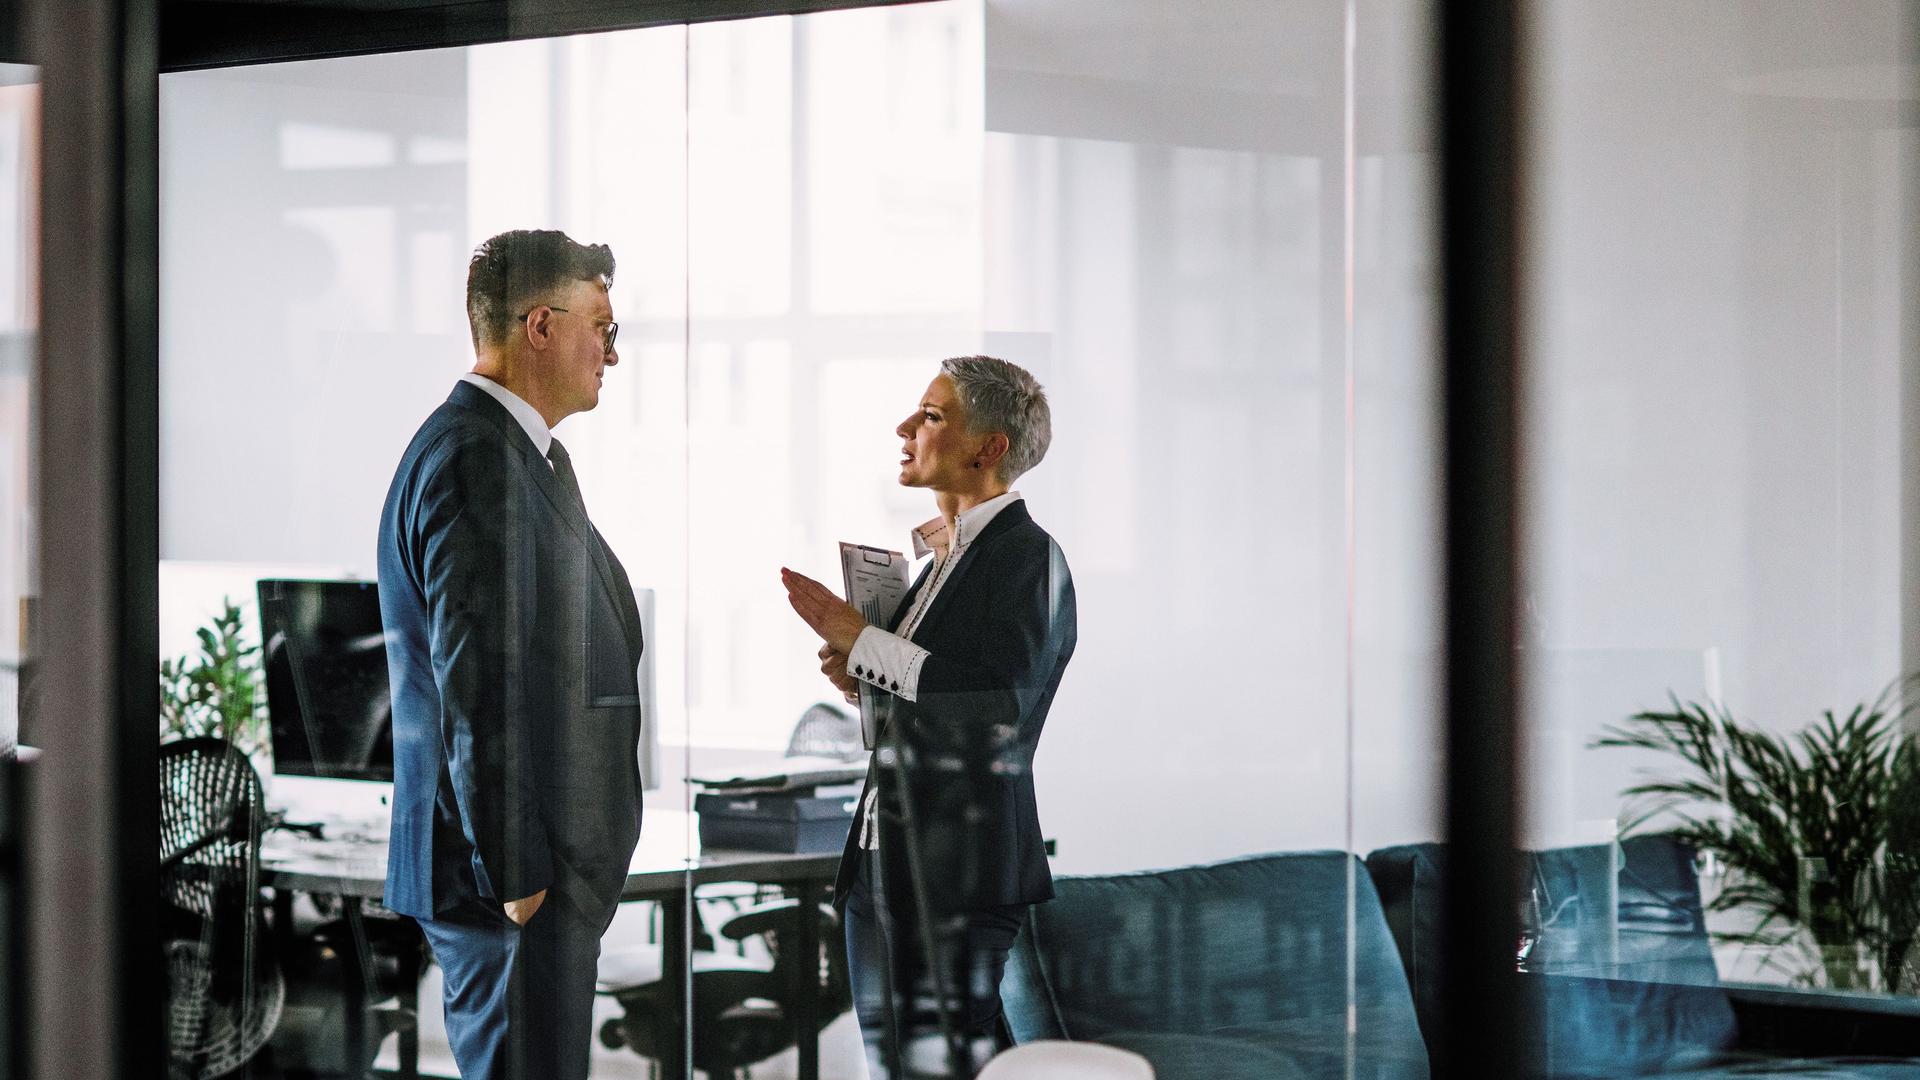 Ein Mann und eine Frau in Business-Kleidung sprechen miteinander  hinter einer Glasscheibe in einem modernen Büro.